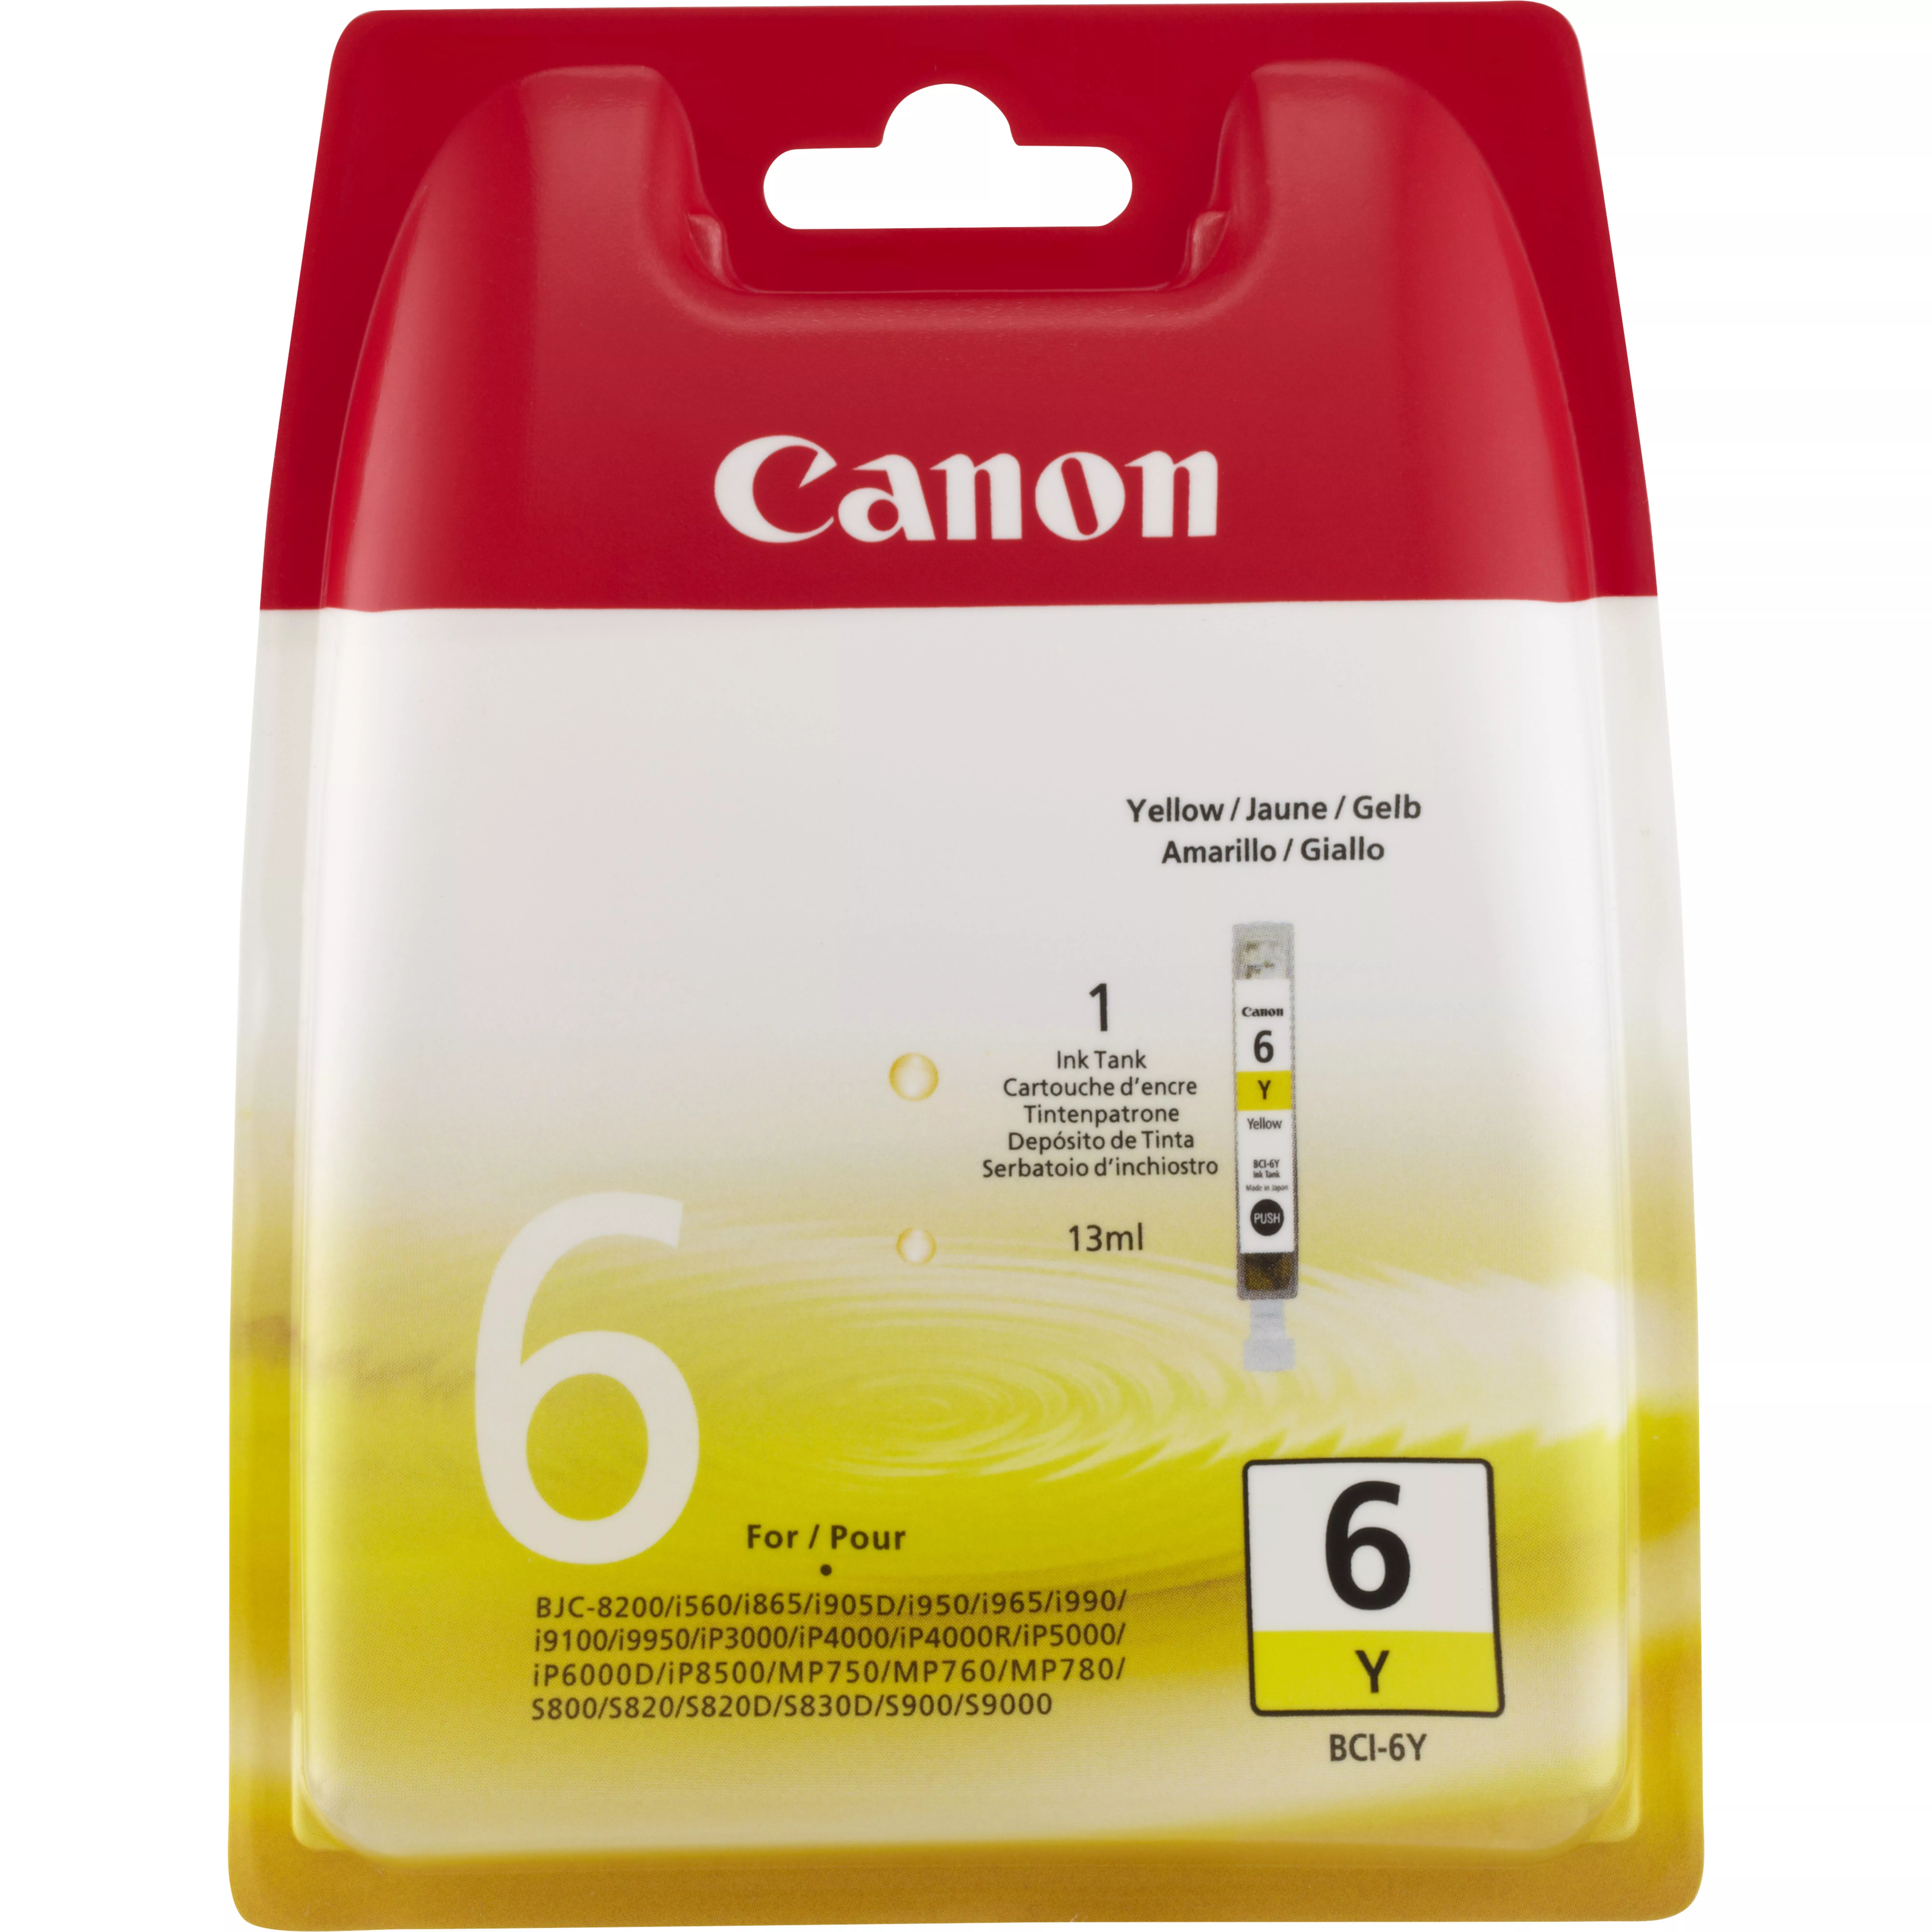 Achat CANON BCI-6Y cartouche d encre jaune capacite standard au meilleur prix